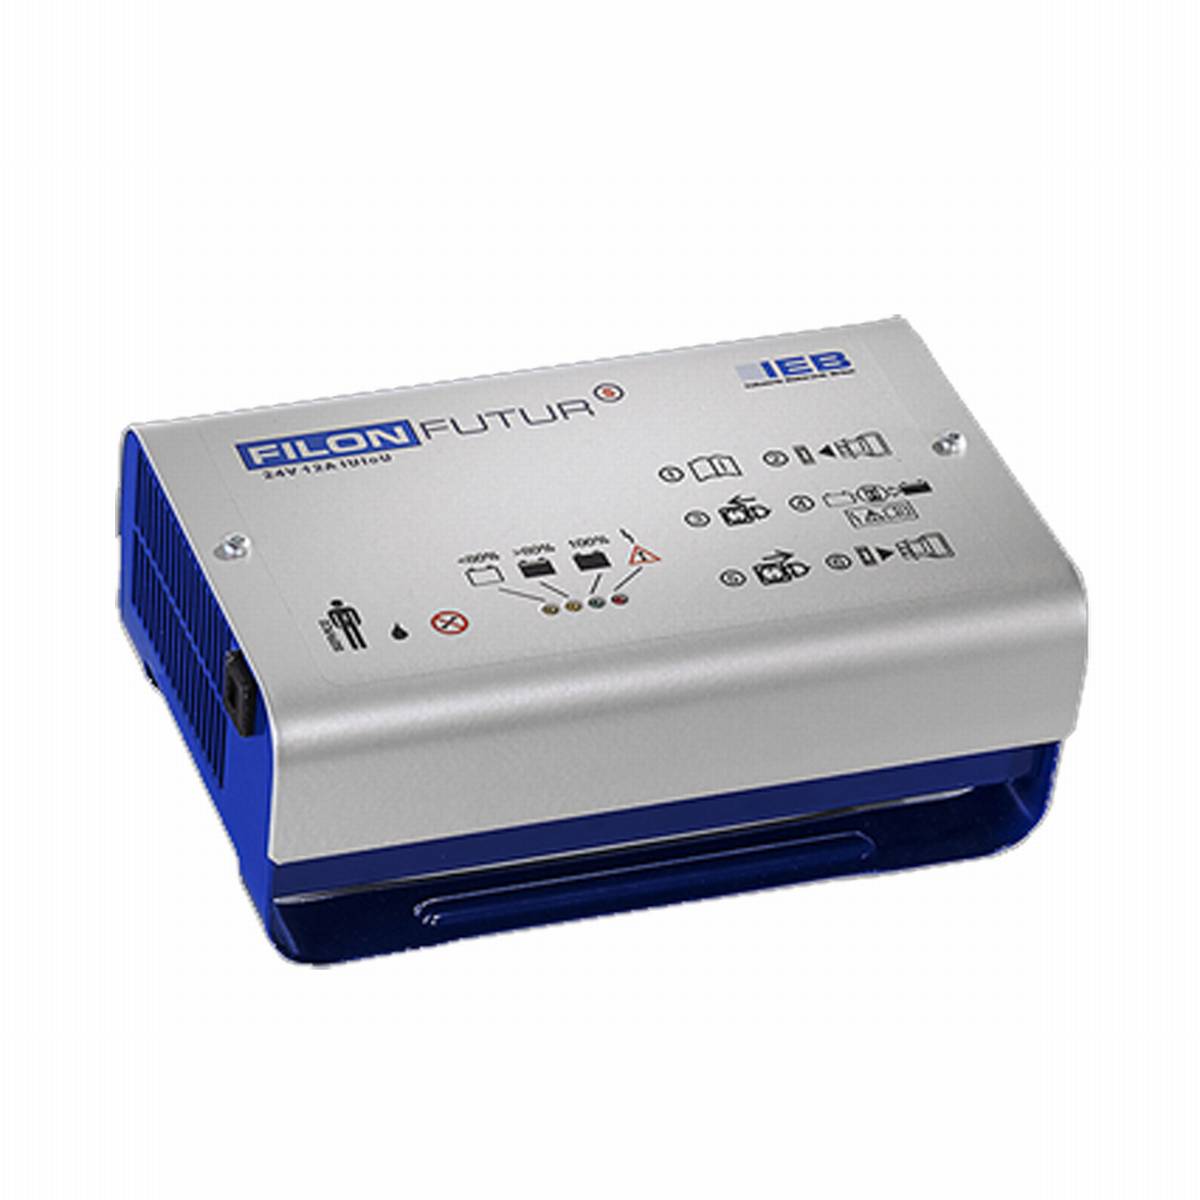 IEB Filon Futur S E230 G24/12 B65-FP (rete AC) per batteria al piombo 24V 12A corrente di carica spina XLR